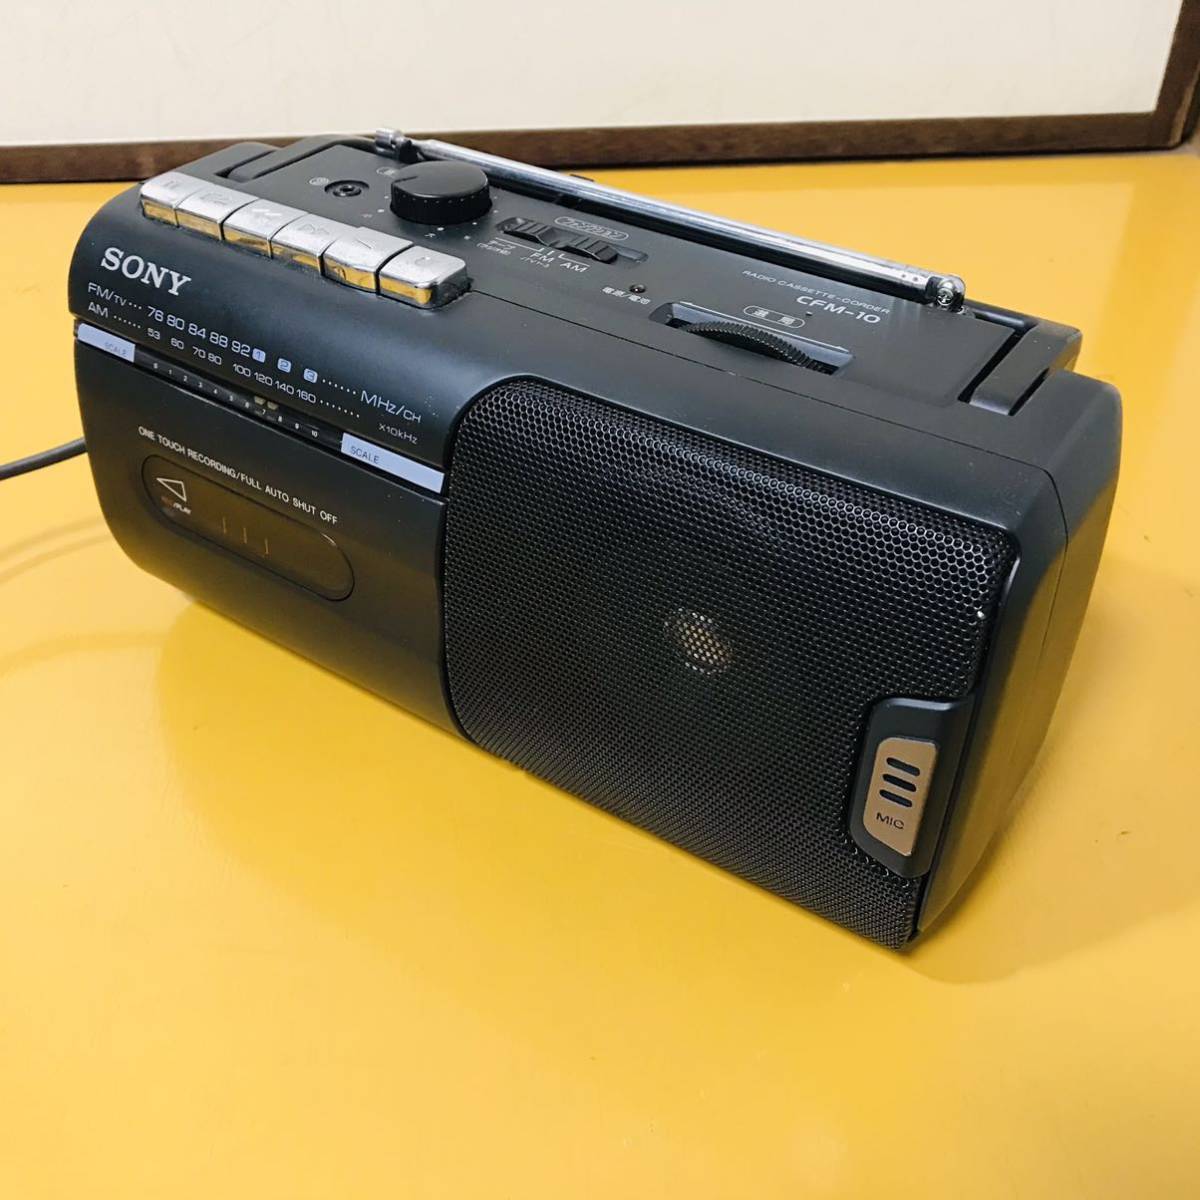 ソニー SONY ラジカセ CFM-10 ラジオ カセット 2003 年製 ブラックの画像2